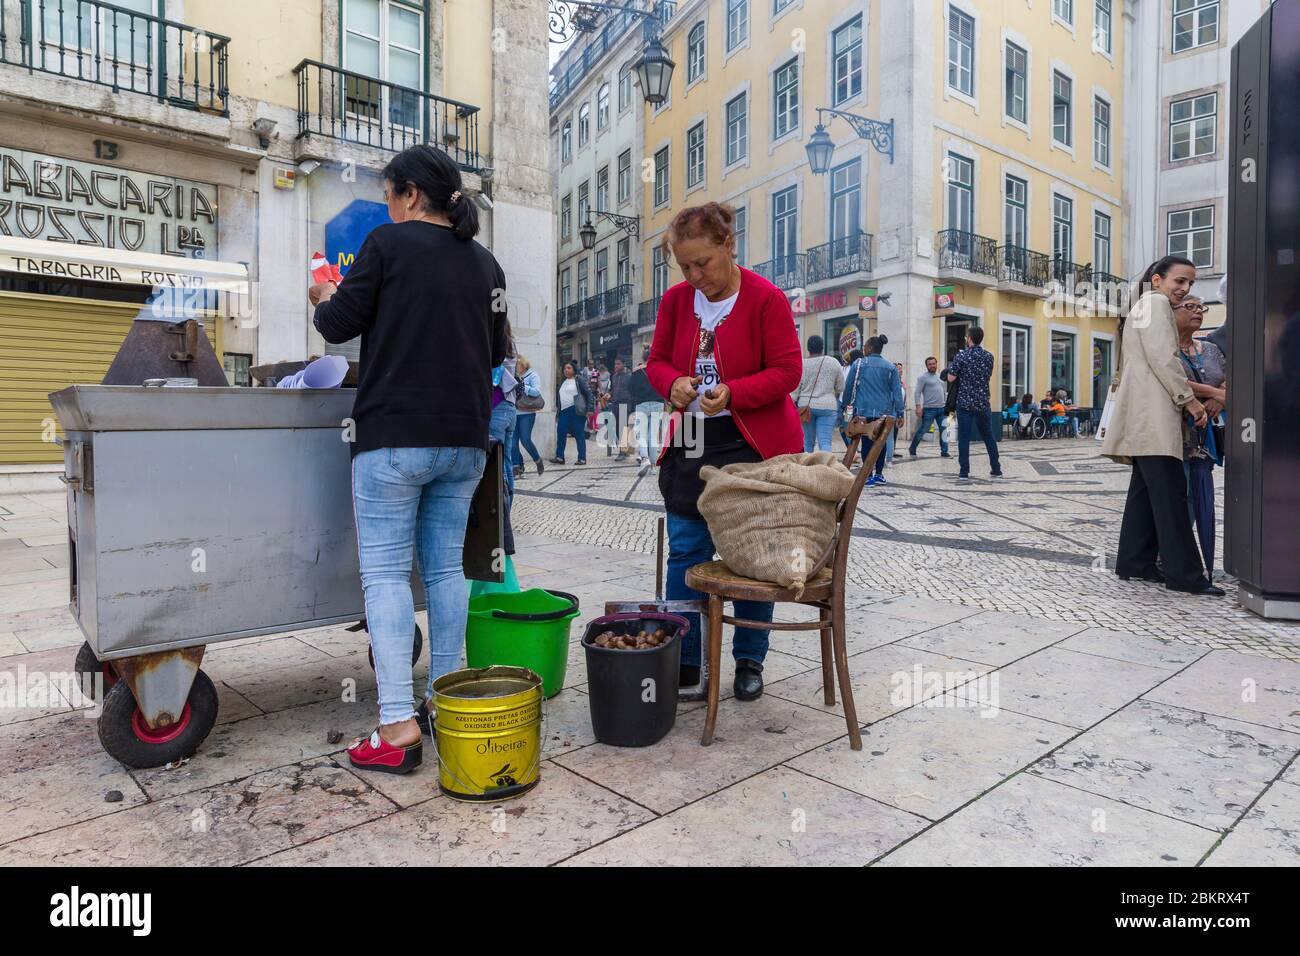 Portogallo, Lisbona, Baixa, venditori di castagne arrostite all'angolo di piazza Dom Pedro IV Foto Stock